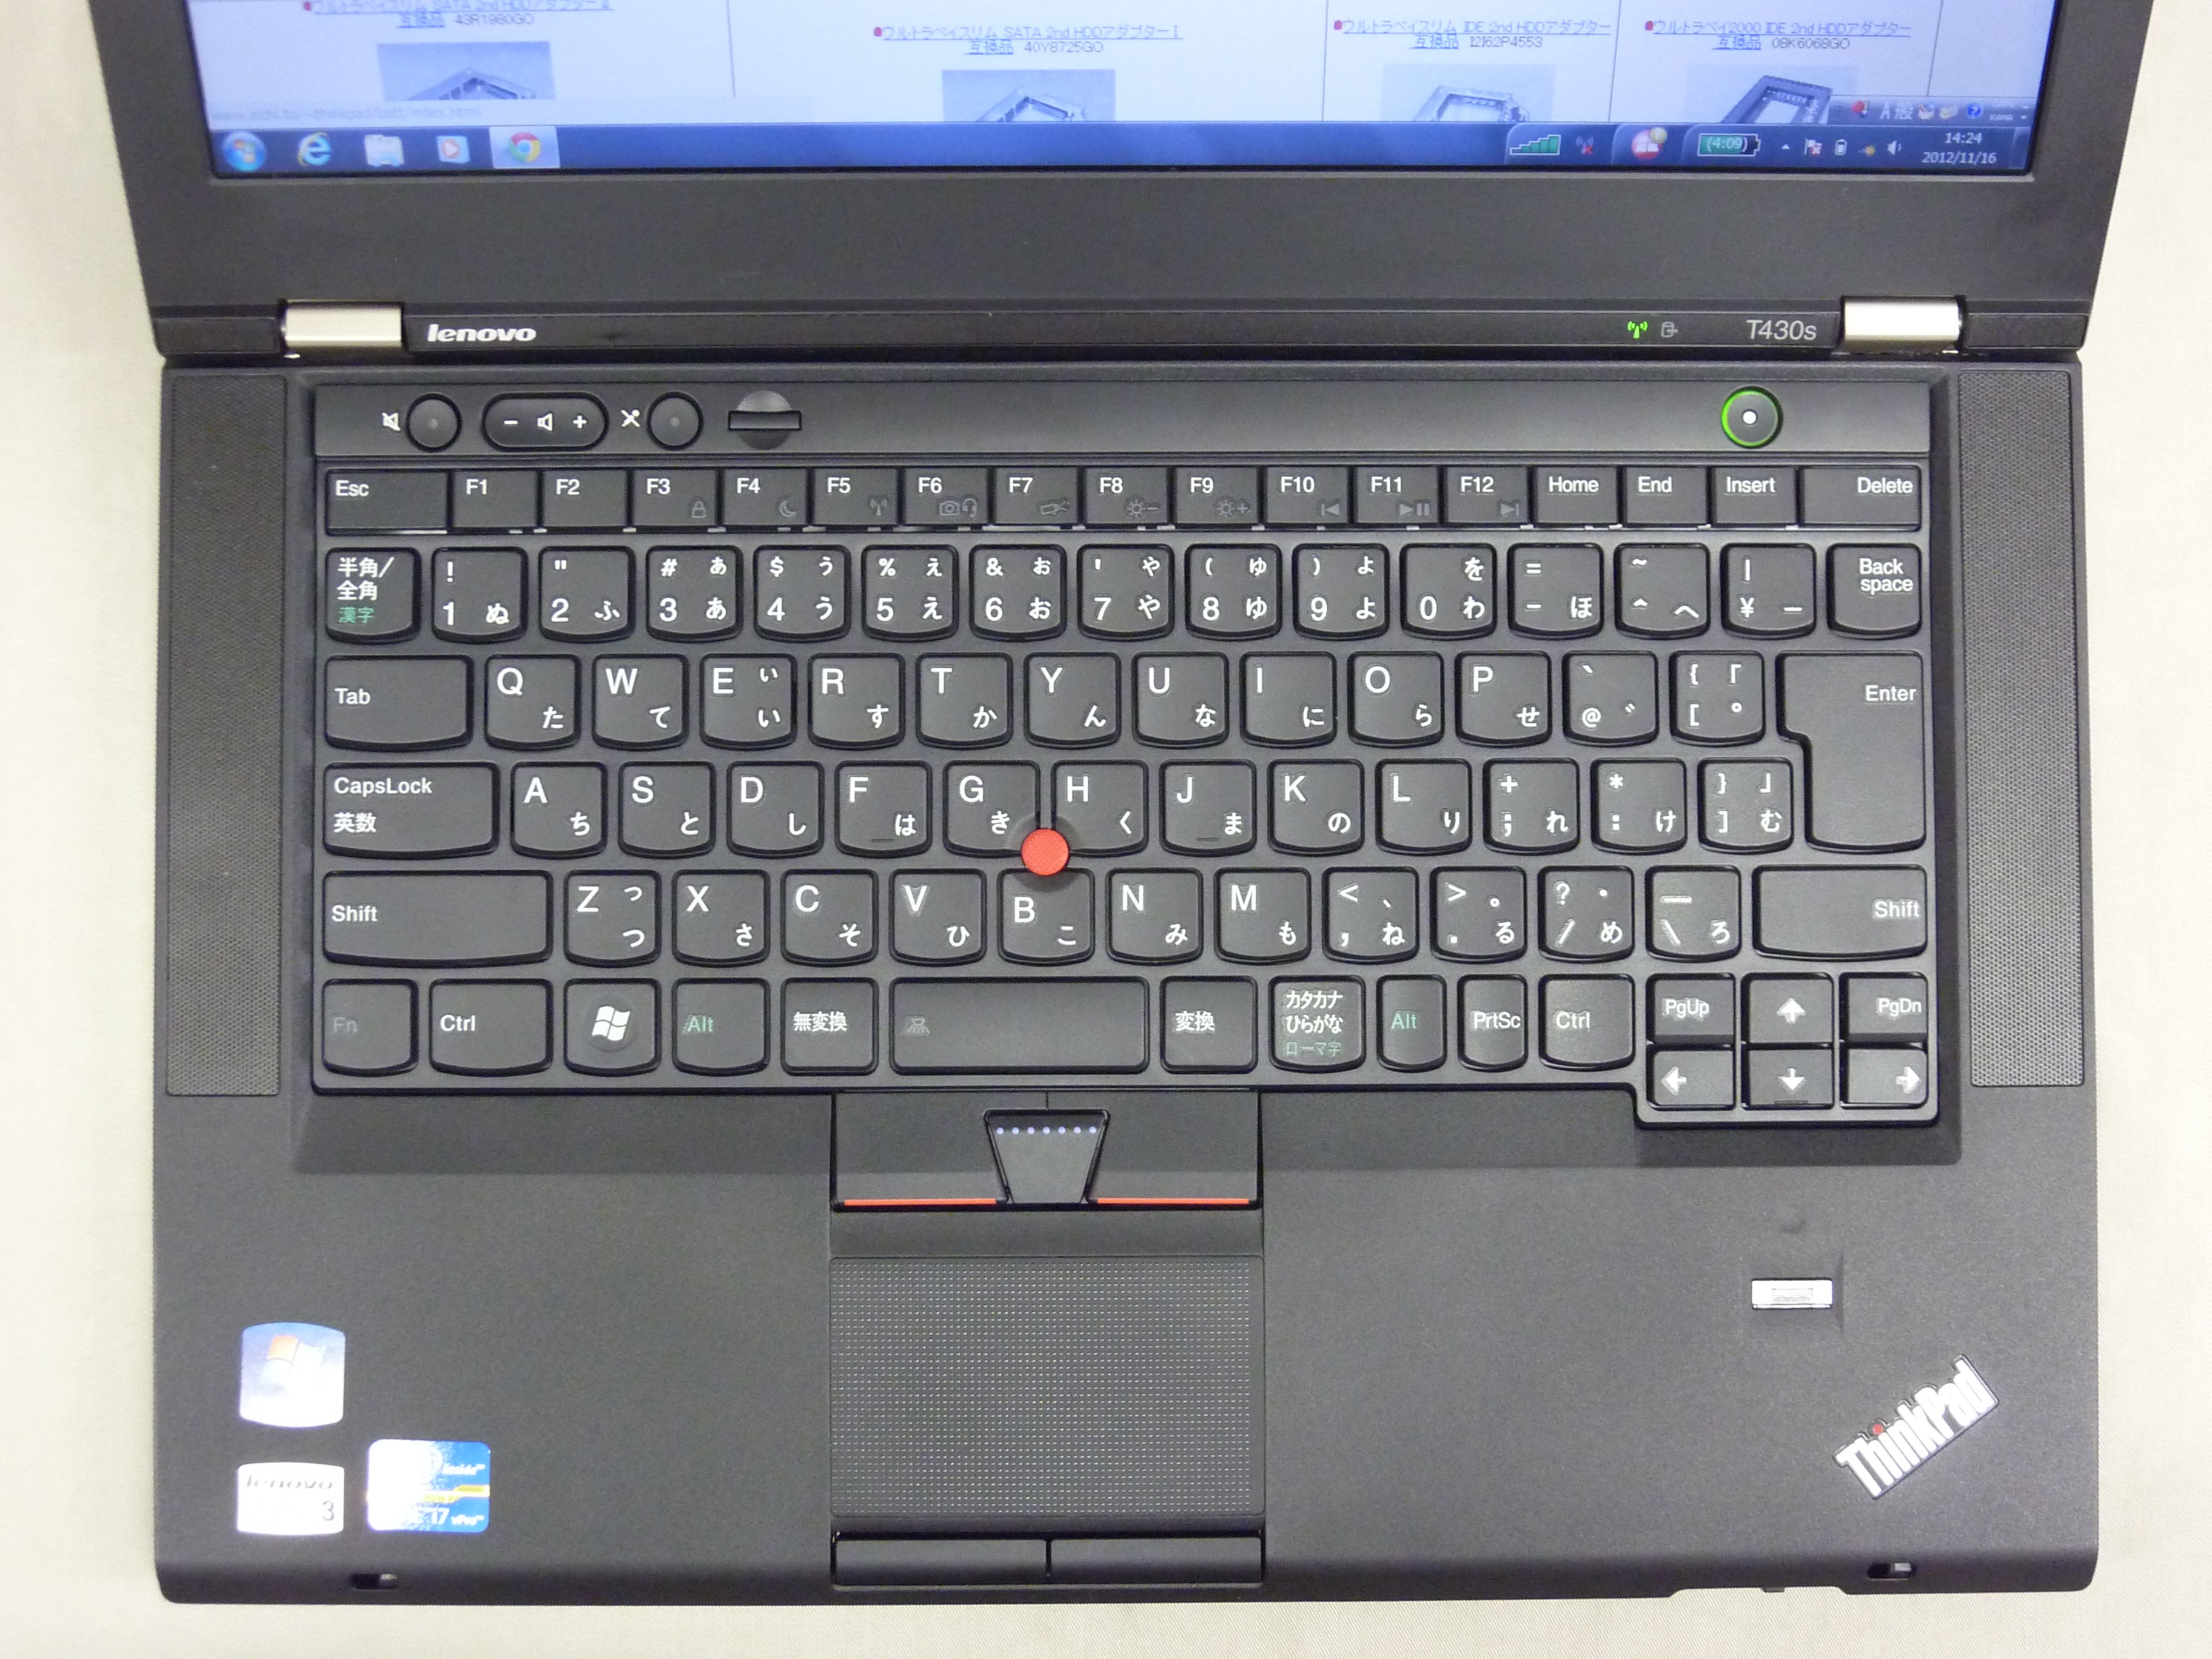 Lenovo Thinkpad T430s